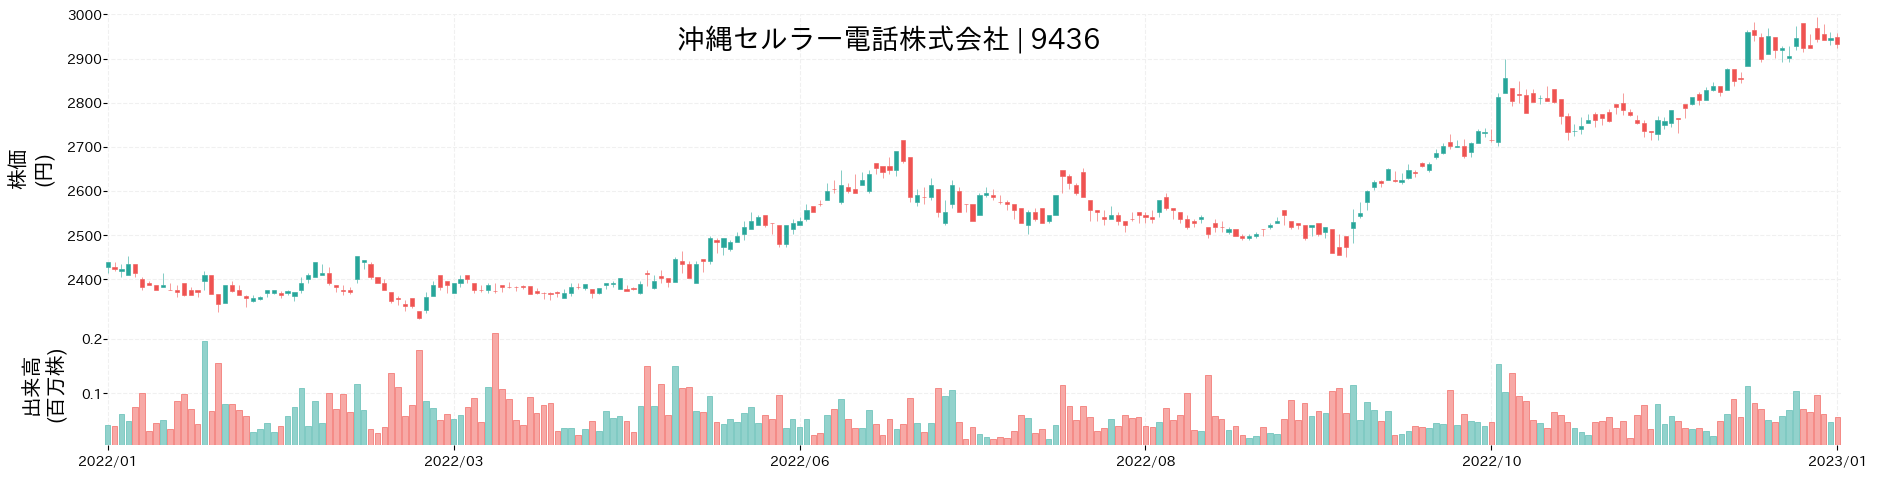 沖縄セルラー電話の株価推移(2022)